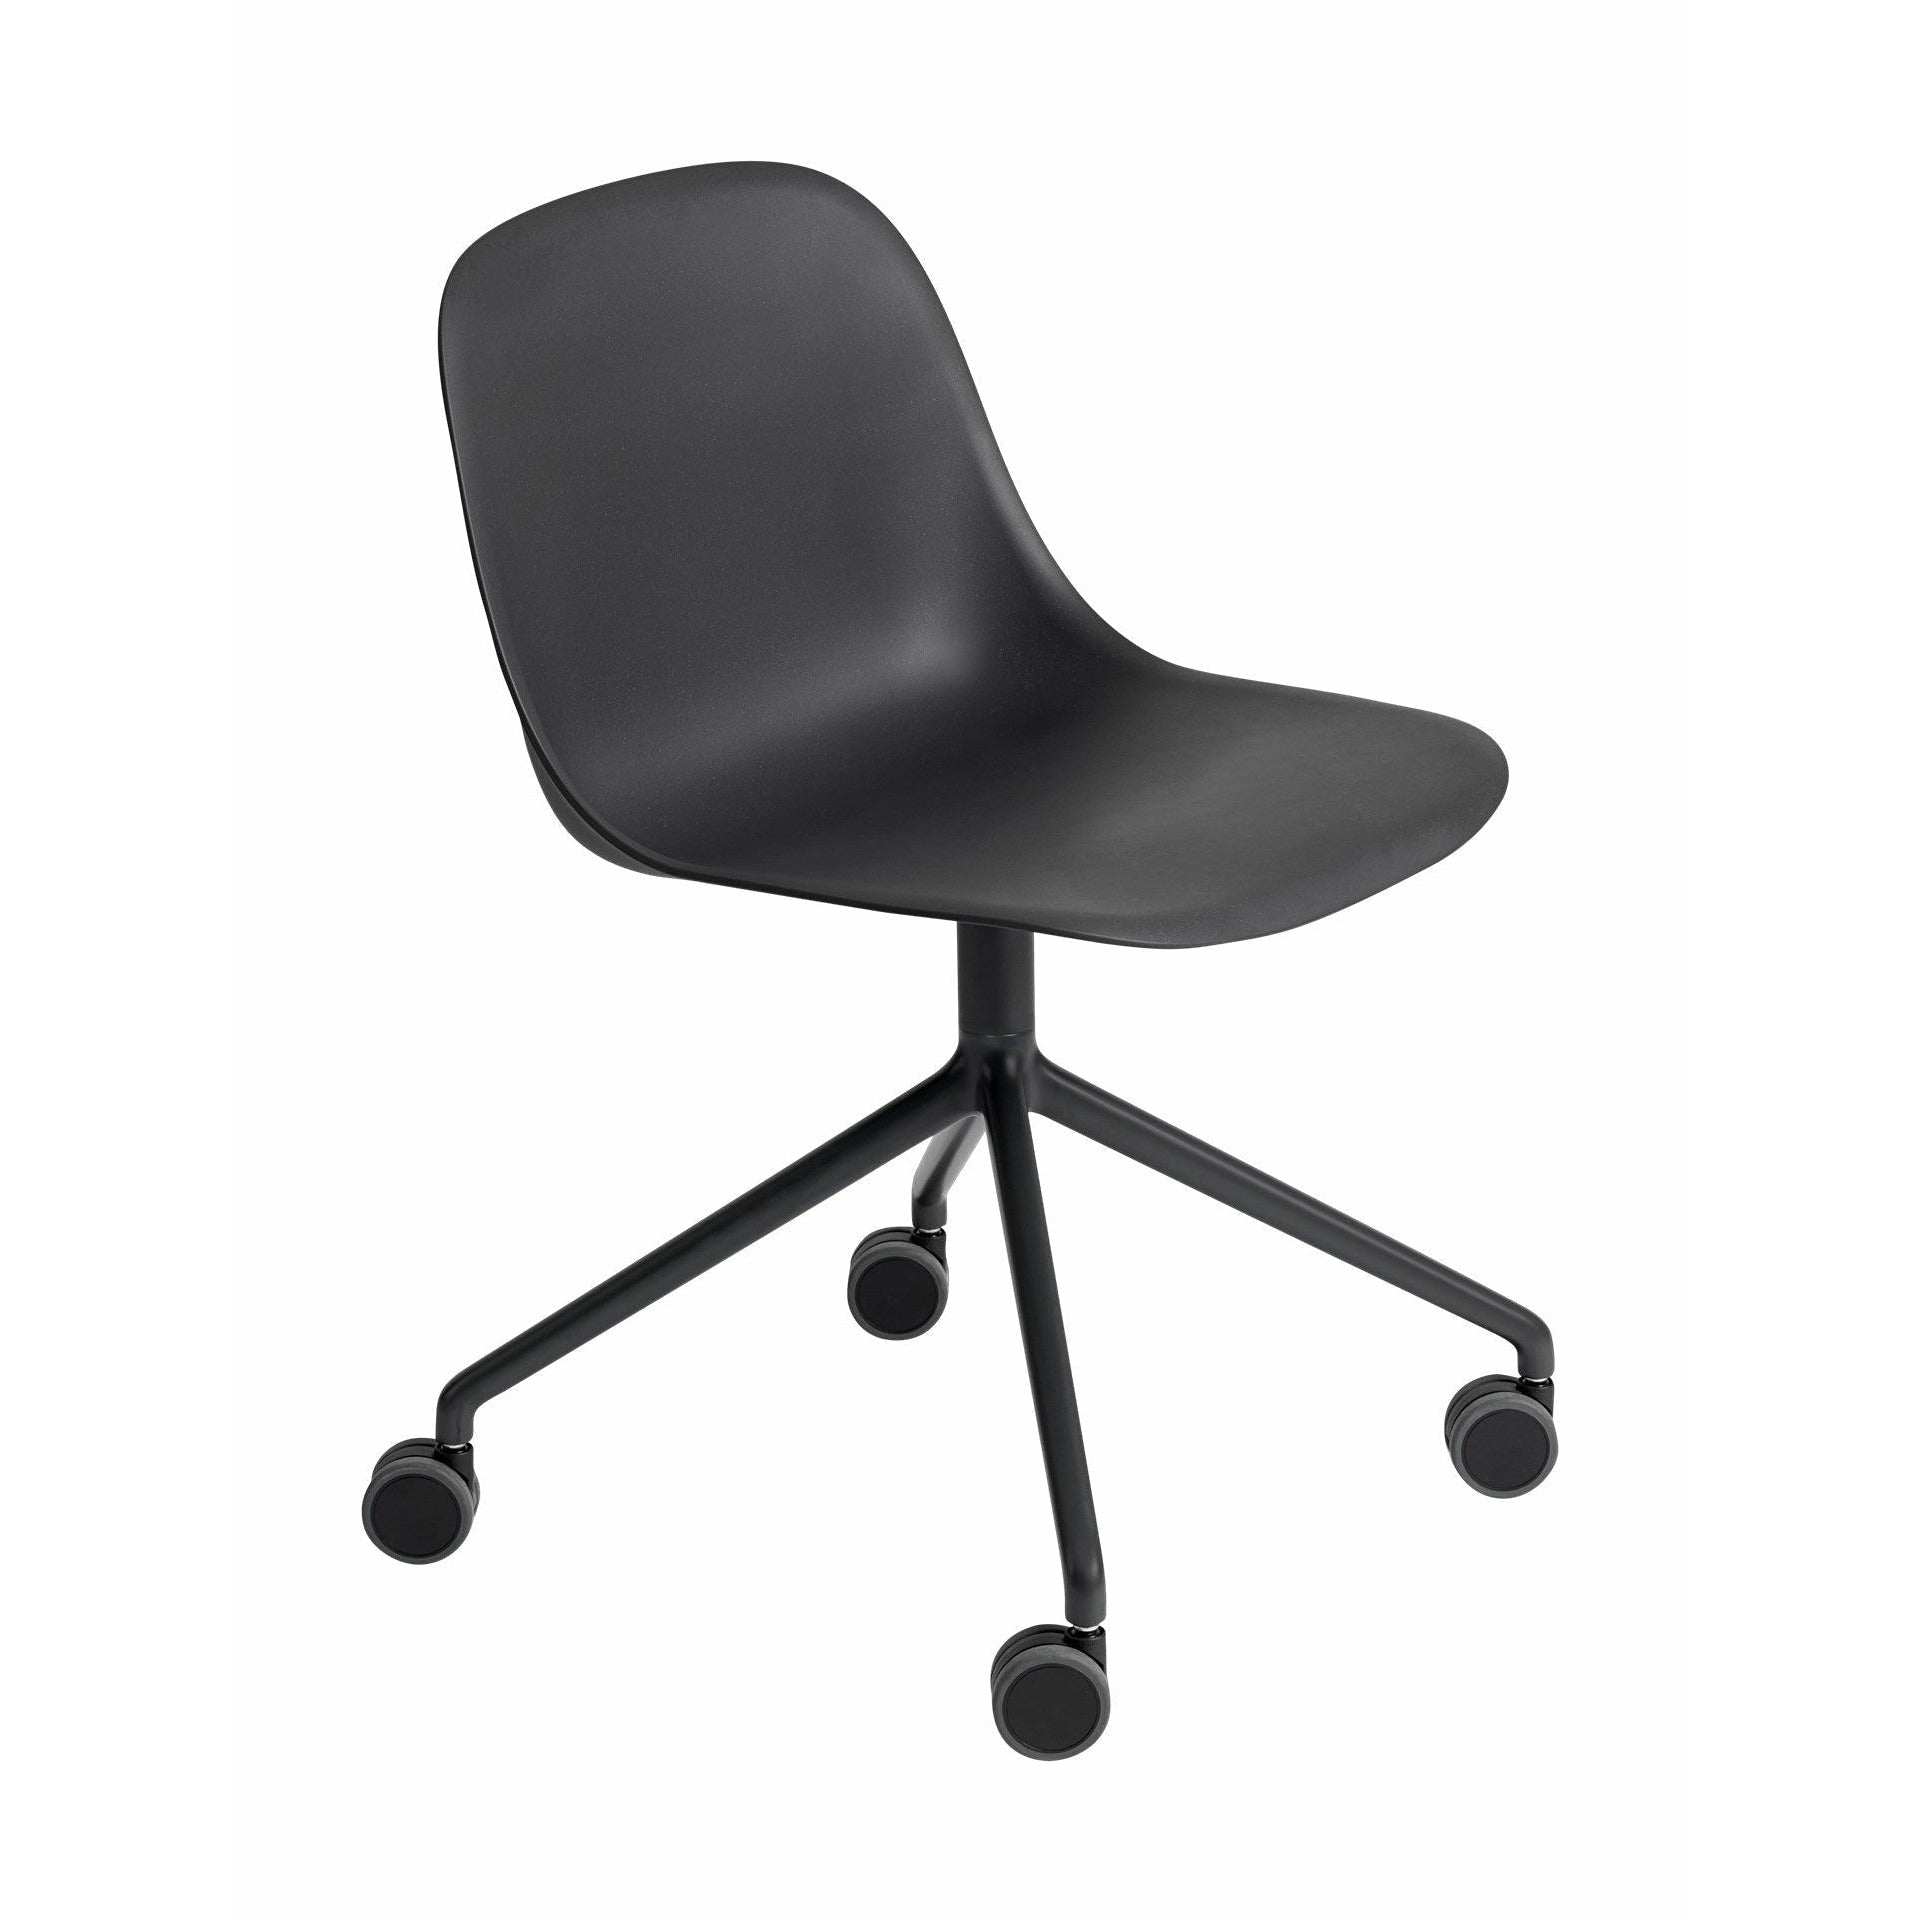 Muuto Fiber Side Chair aus recyceltem Kunststoff, drehbar mit Rädern, schwarz/schwarz